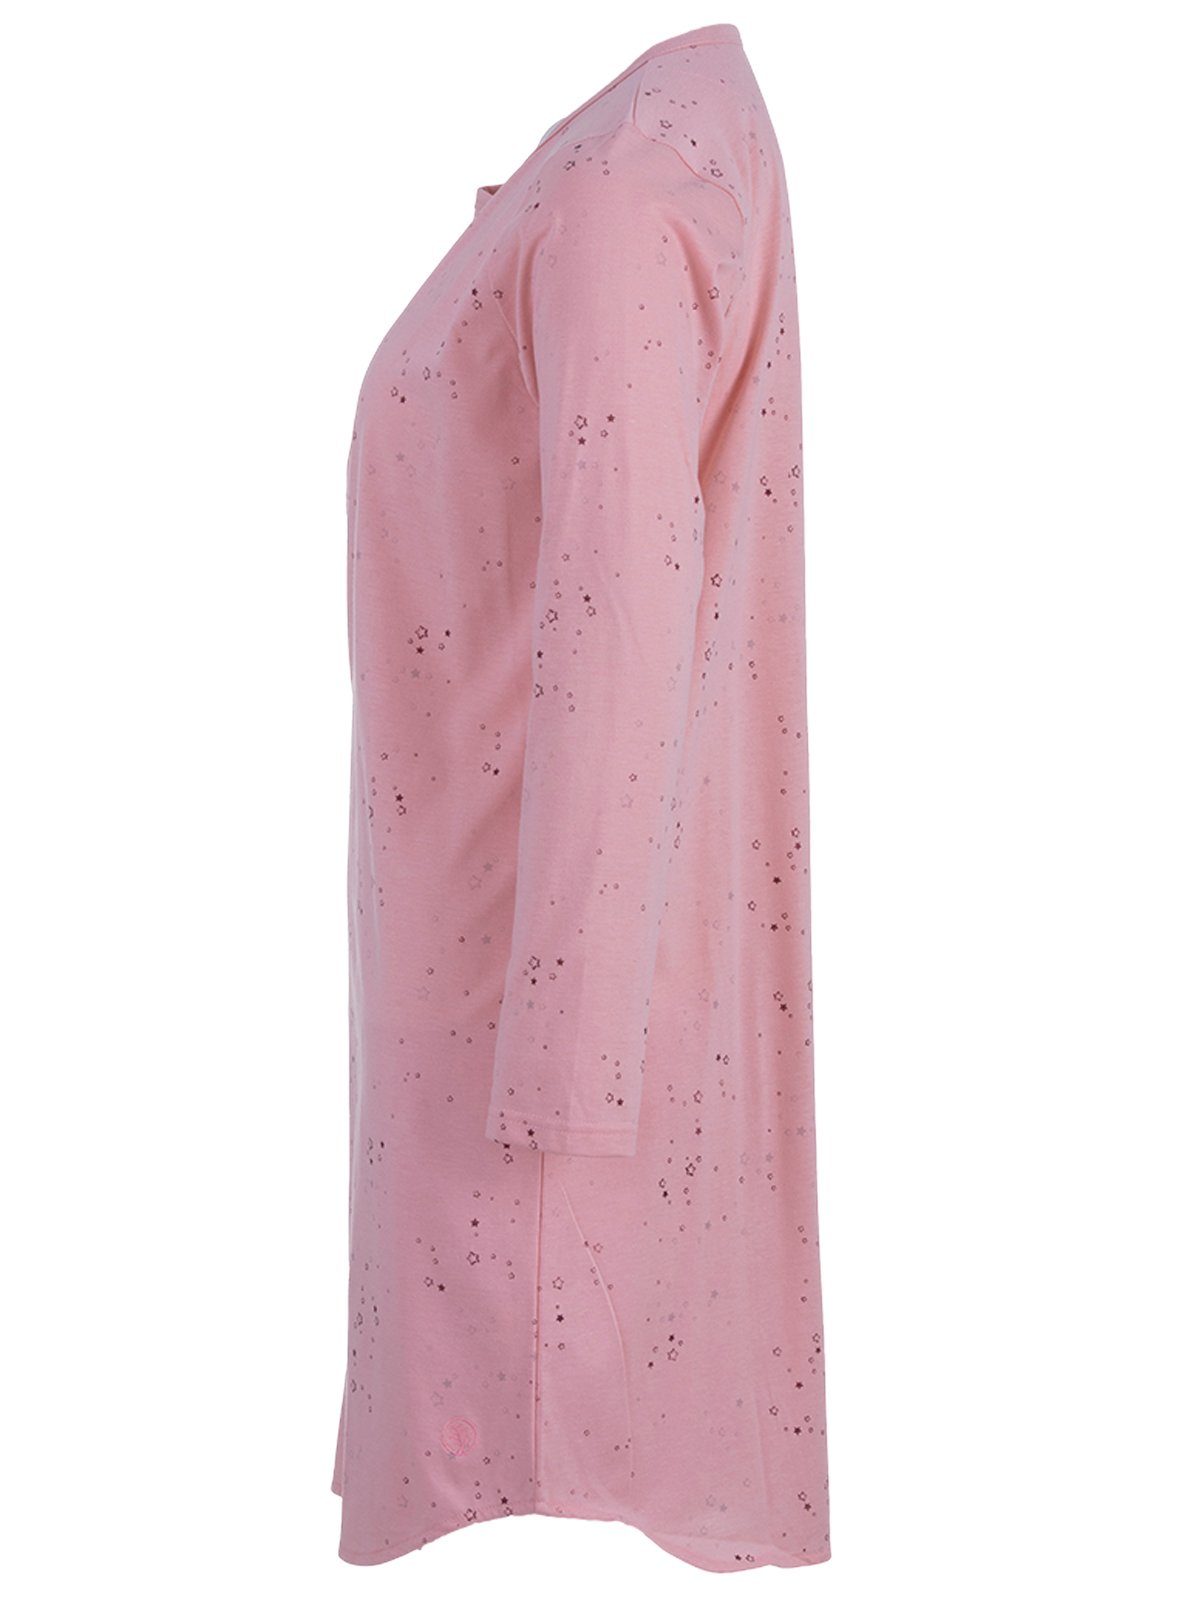 Nachthemd zeitlos Langarm - Sterne Schlafshirt rosa